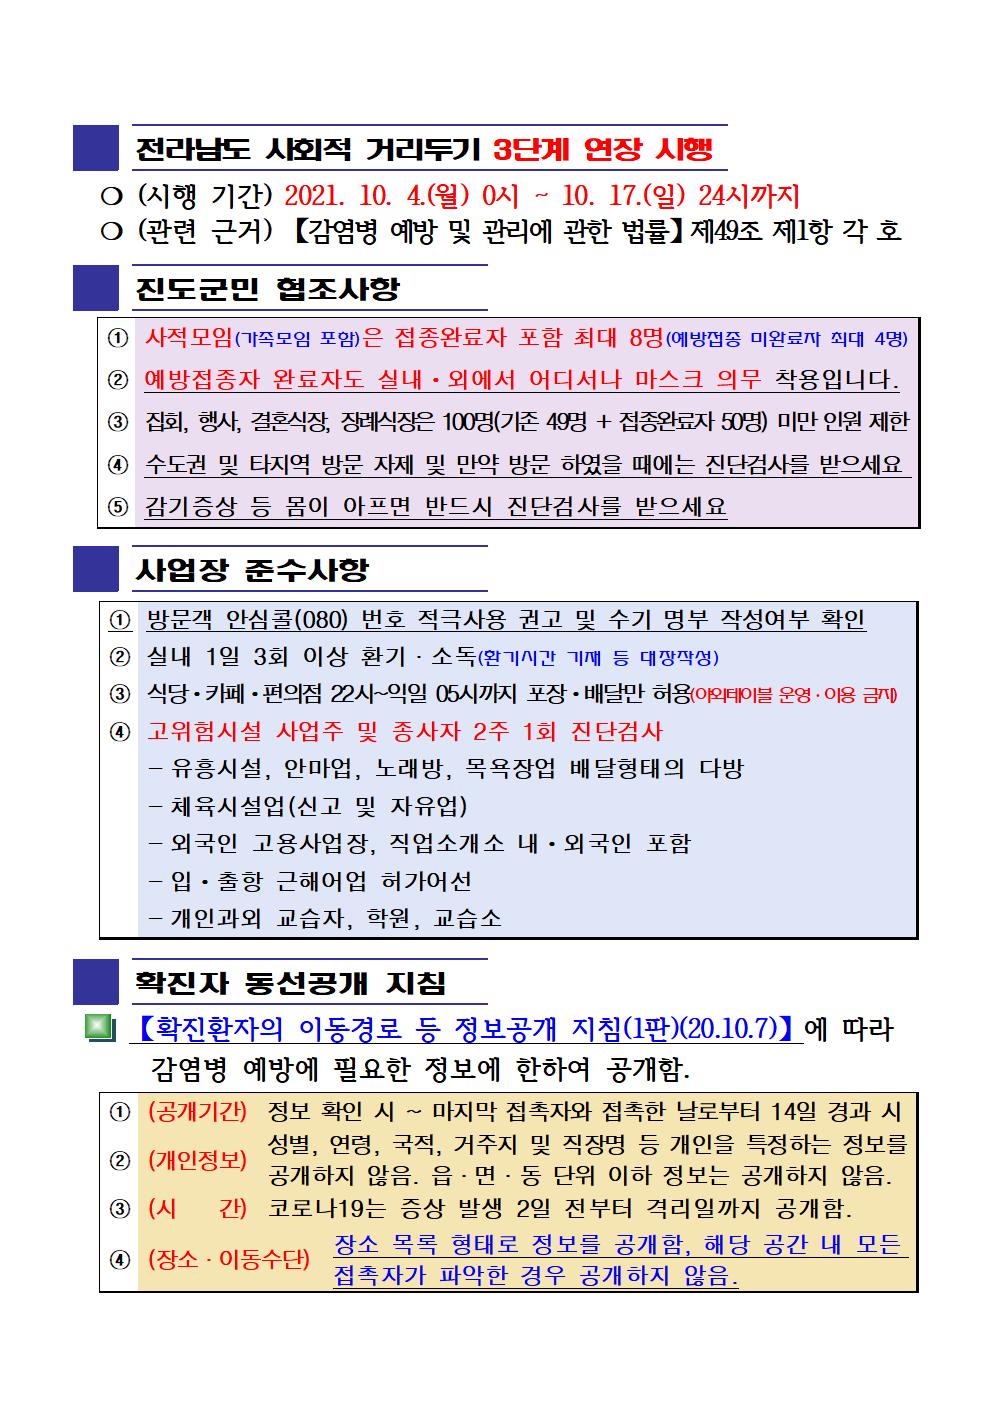 2021년 코로나19 대응 일일상황보고(10월 13일 24시 기준) 첨부#2